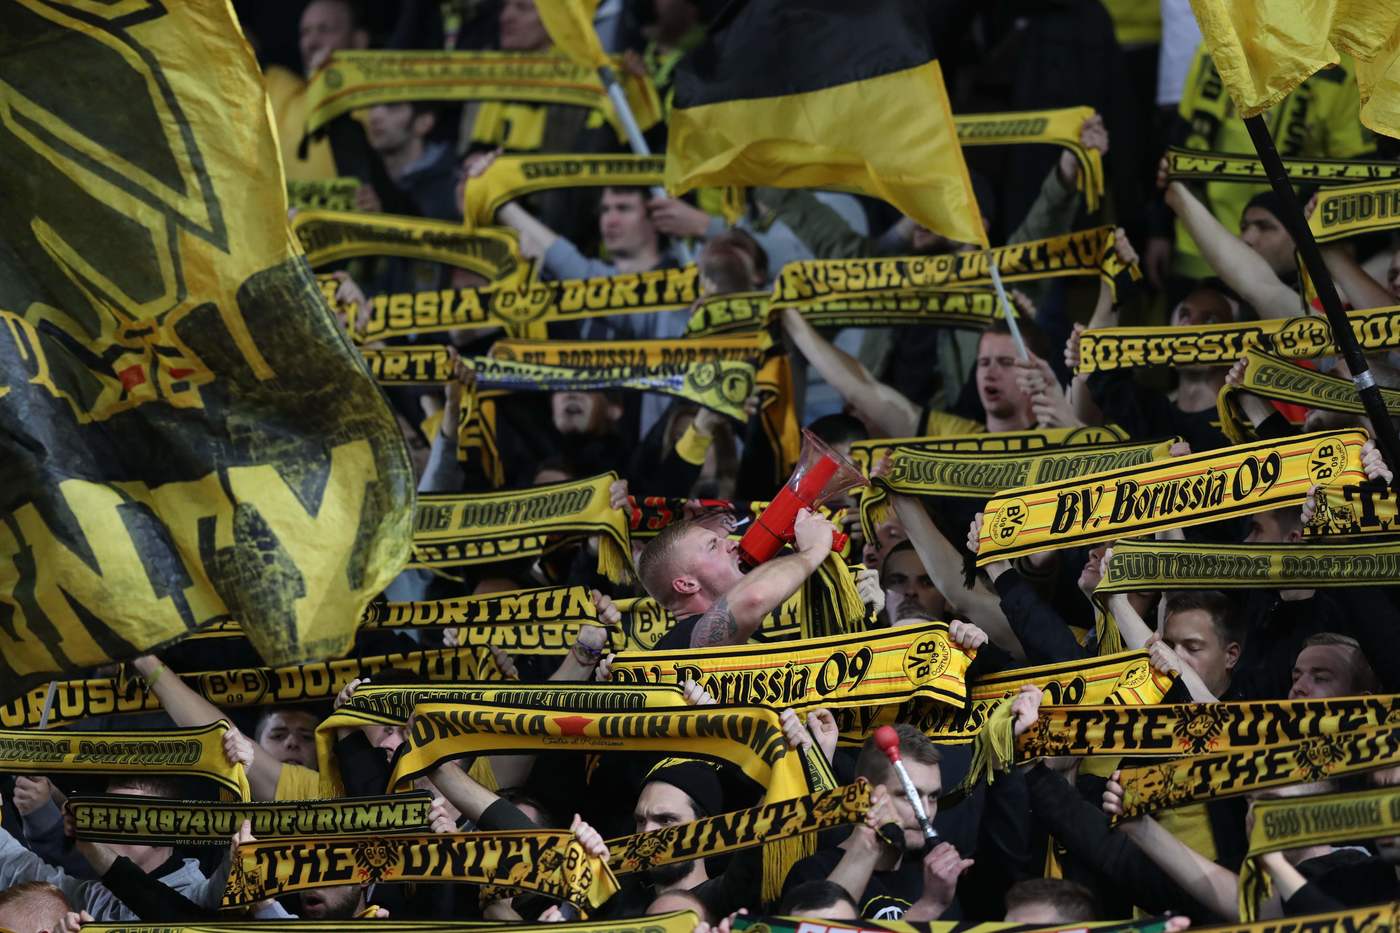 Bundesliga, Augusta-Dortmund 1 marzo: analisi e pronostico della giornata della massima divisione calcistica tedesca